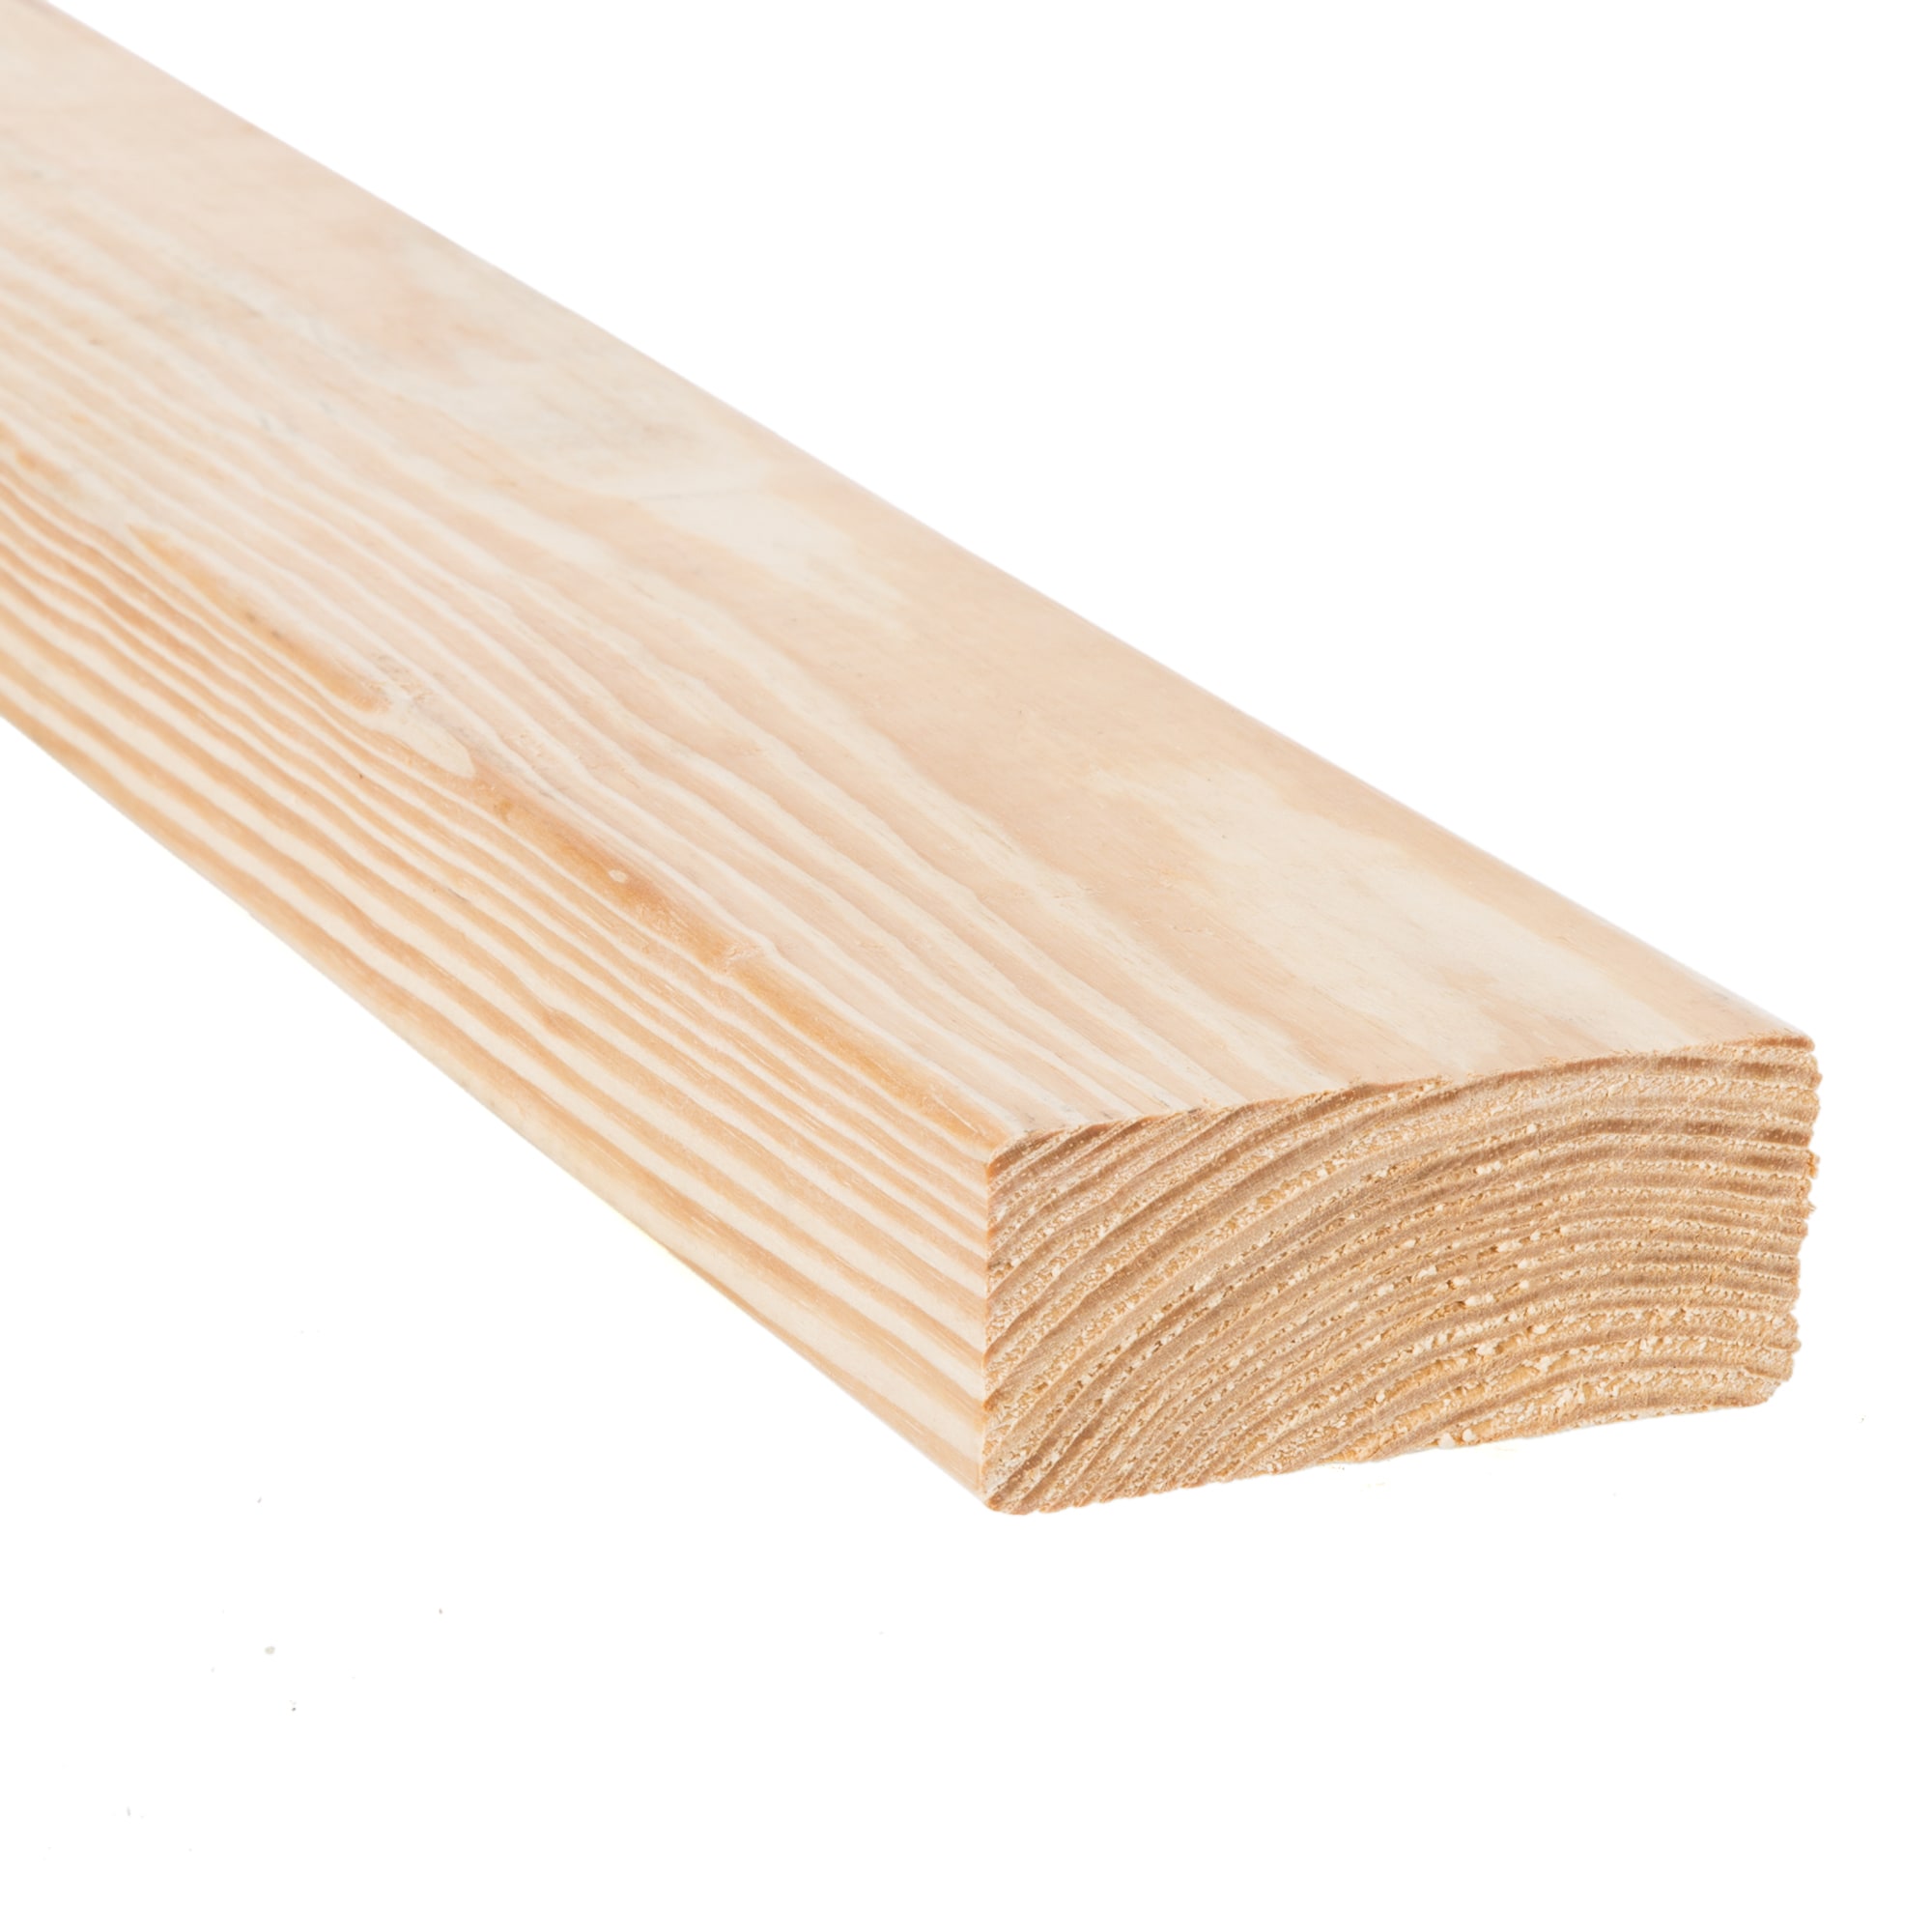 framer series lumber